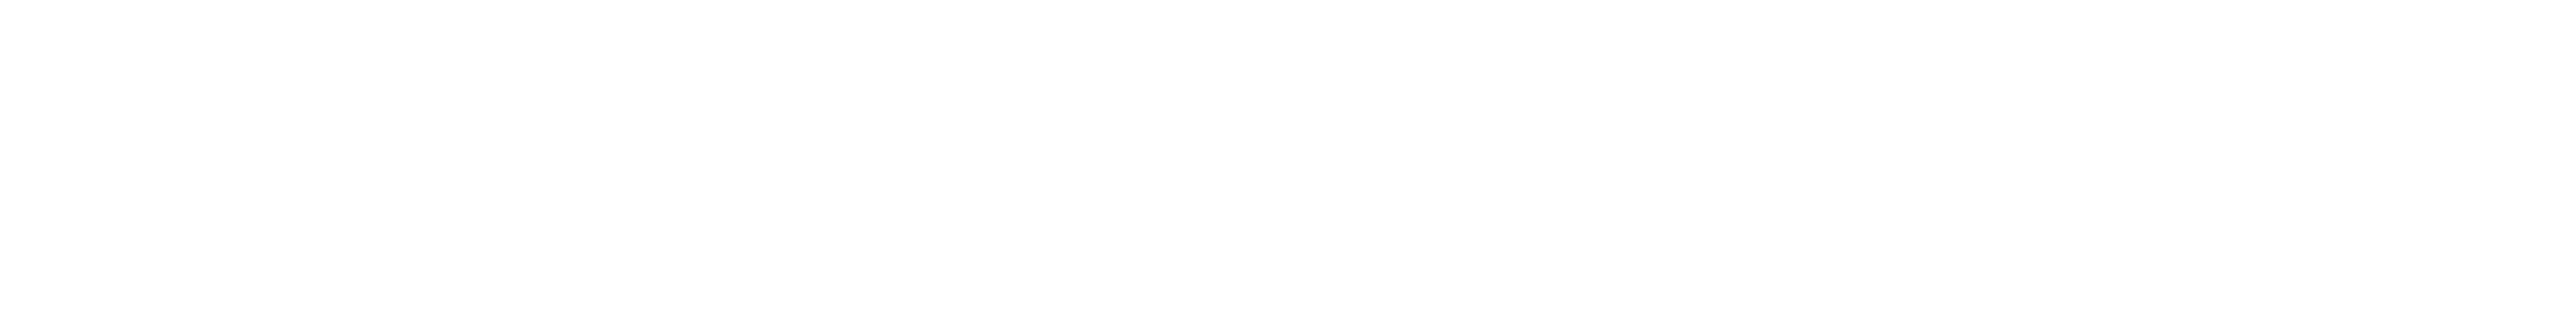 Logo-AZFINTECH-Final-01